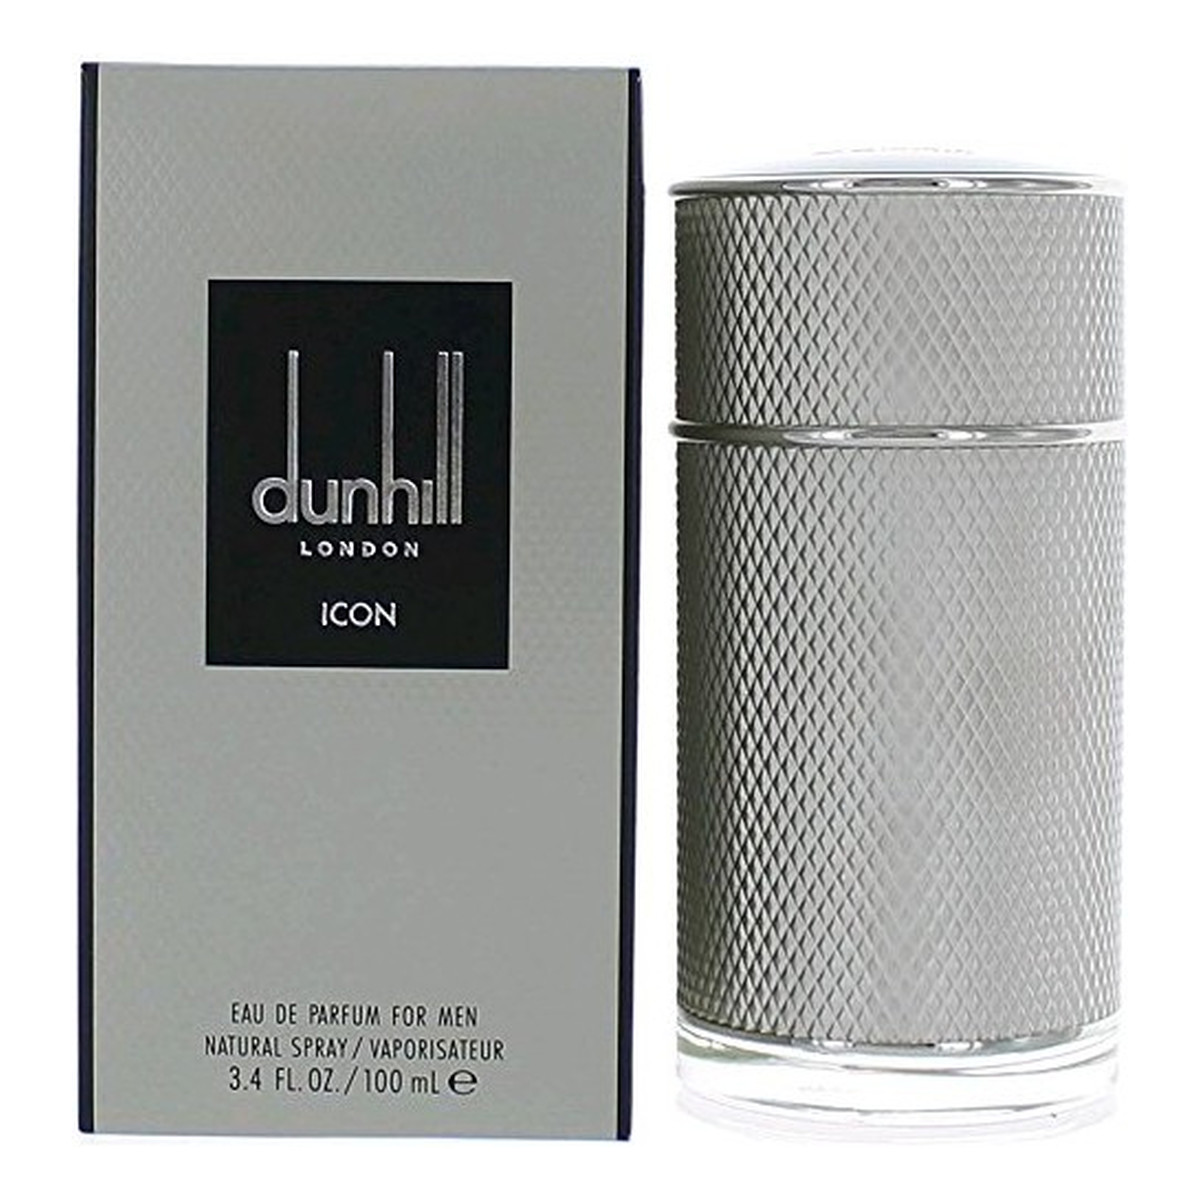 Dunhill London Icon Woda perfumowana 100ml